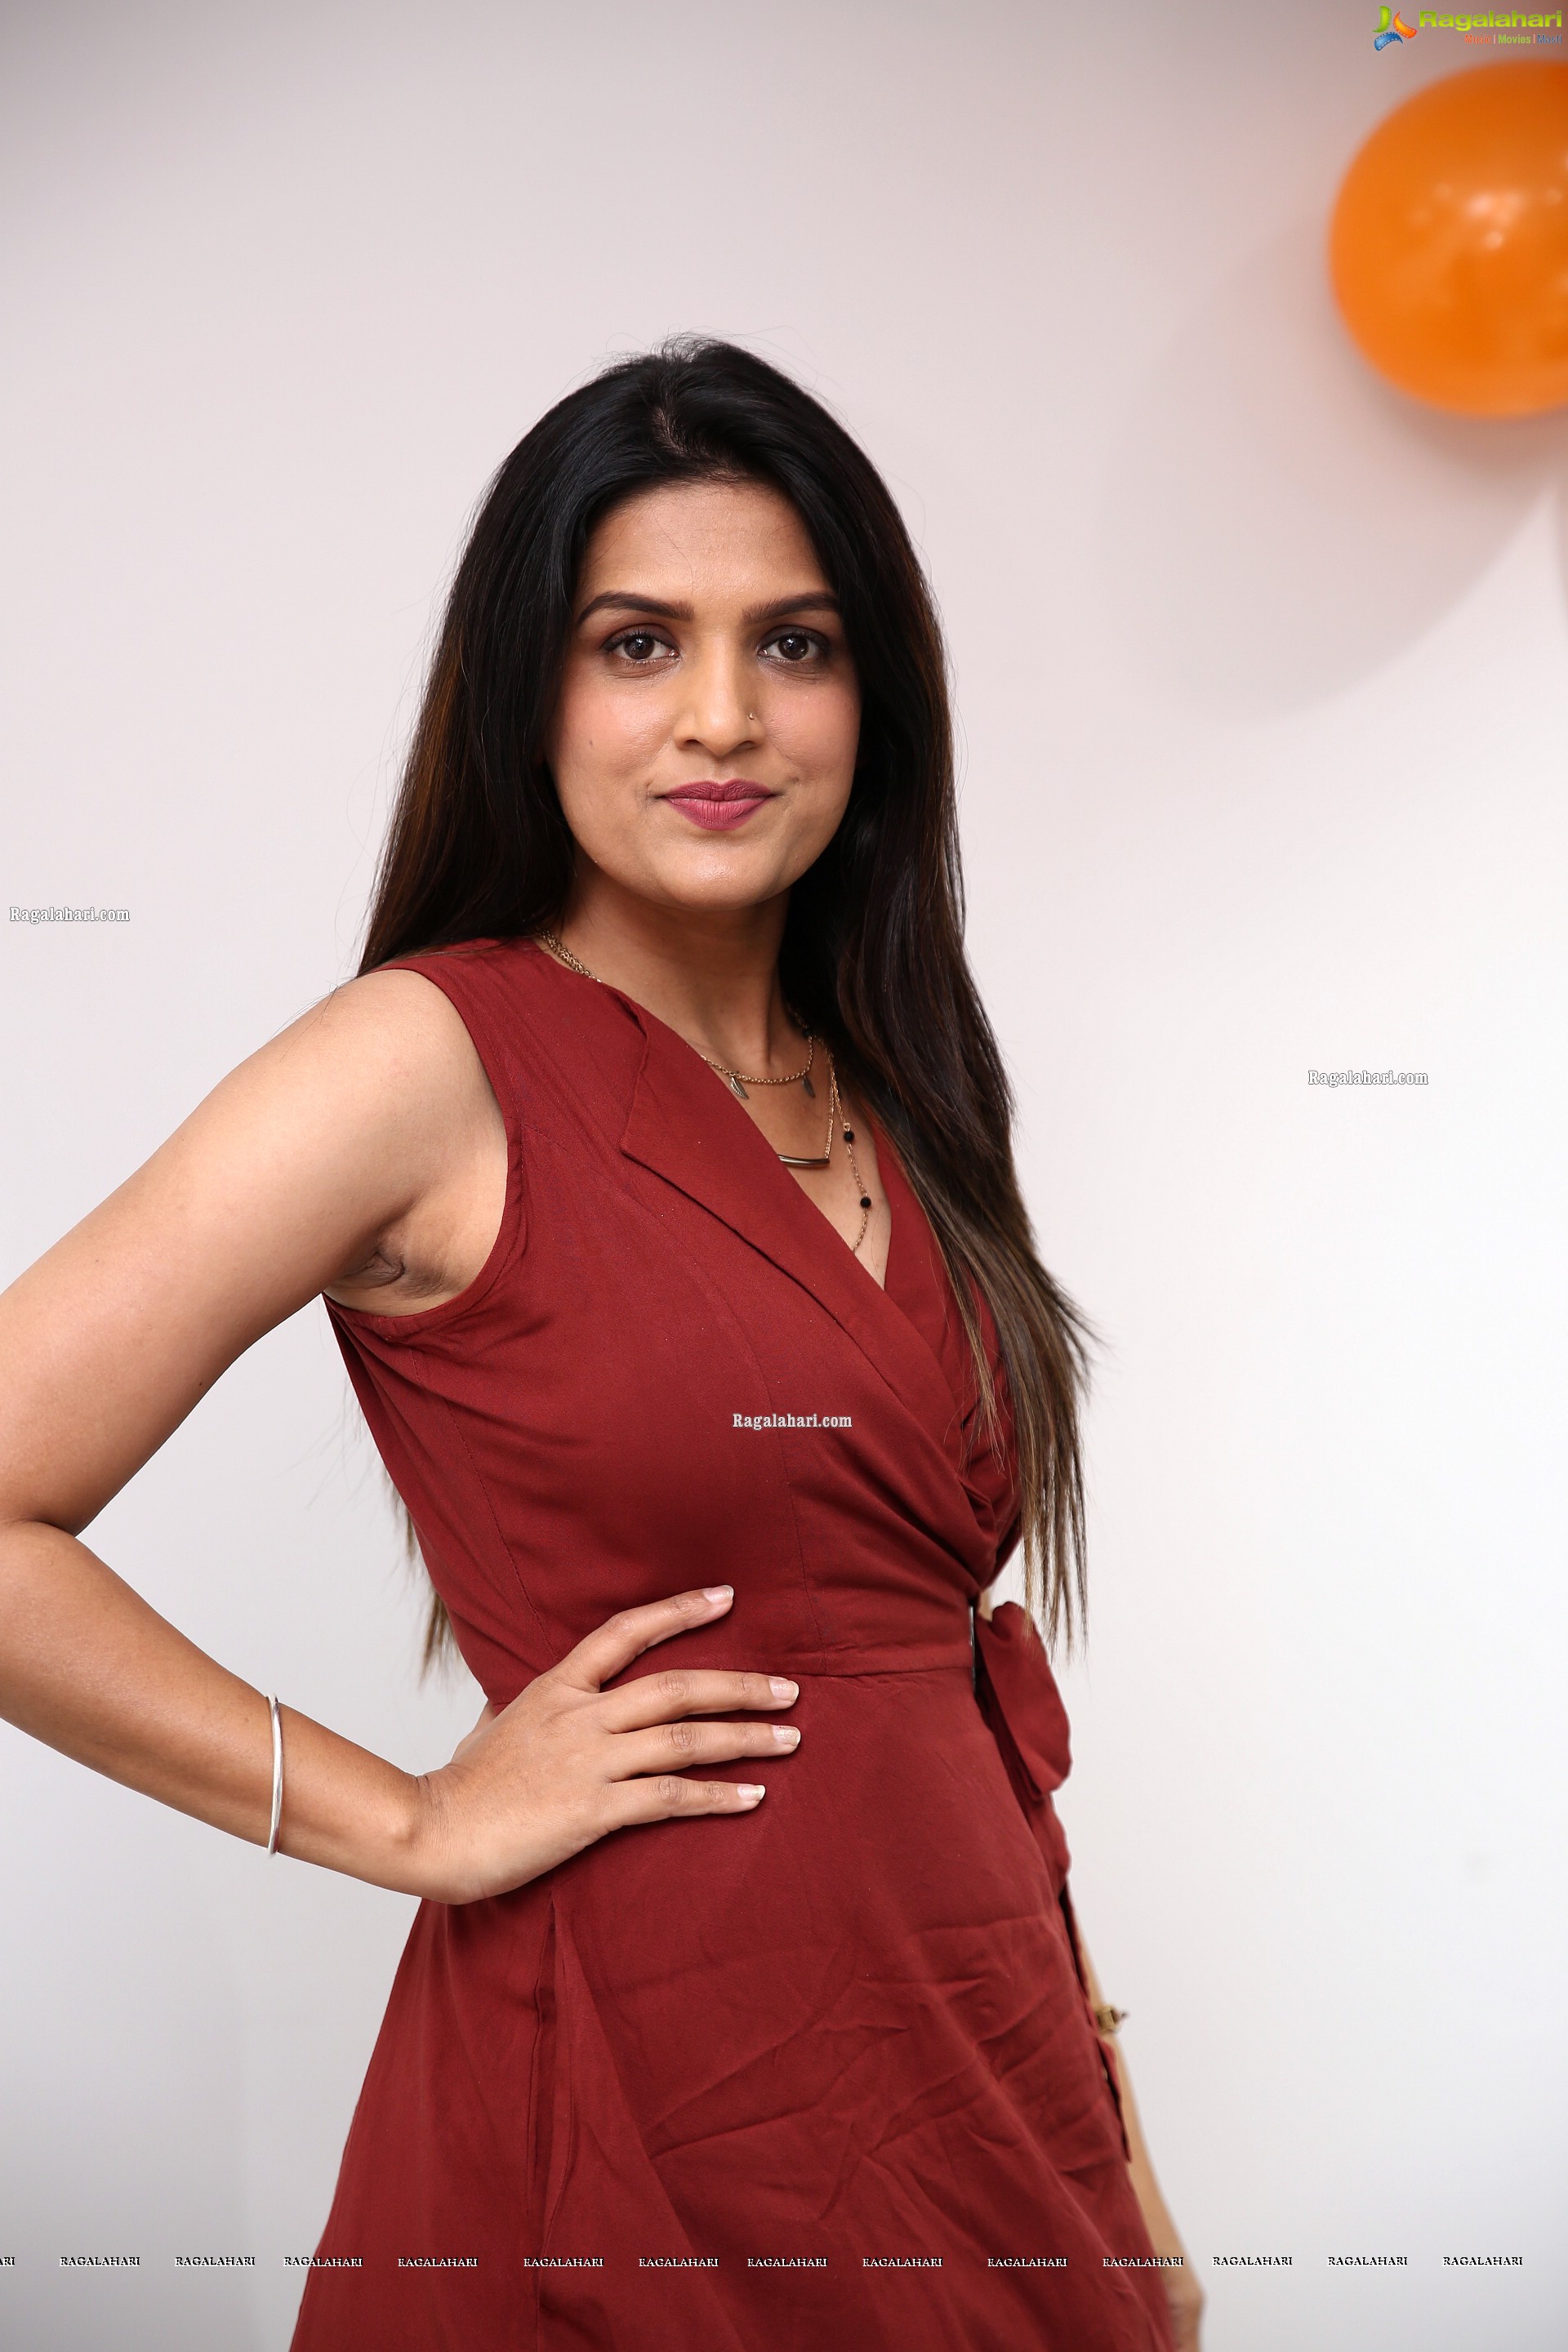 Ritu Biradar in Maroon Front Tie Knot Dress, HD Photo Gallery